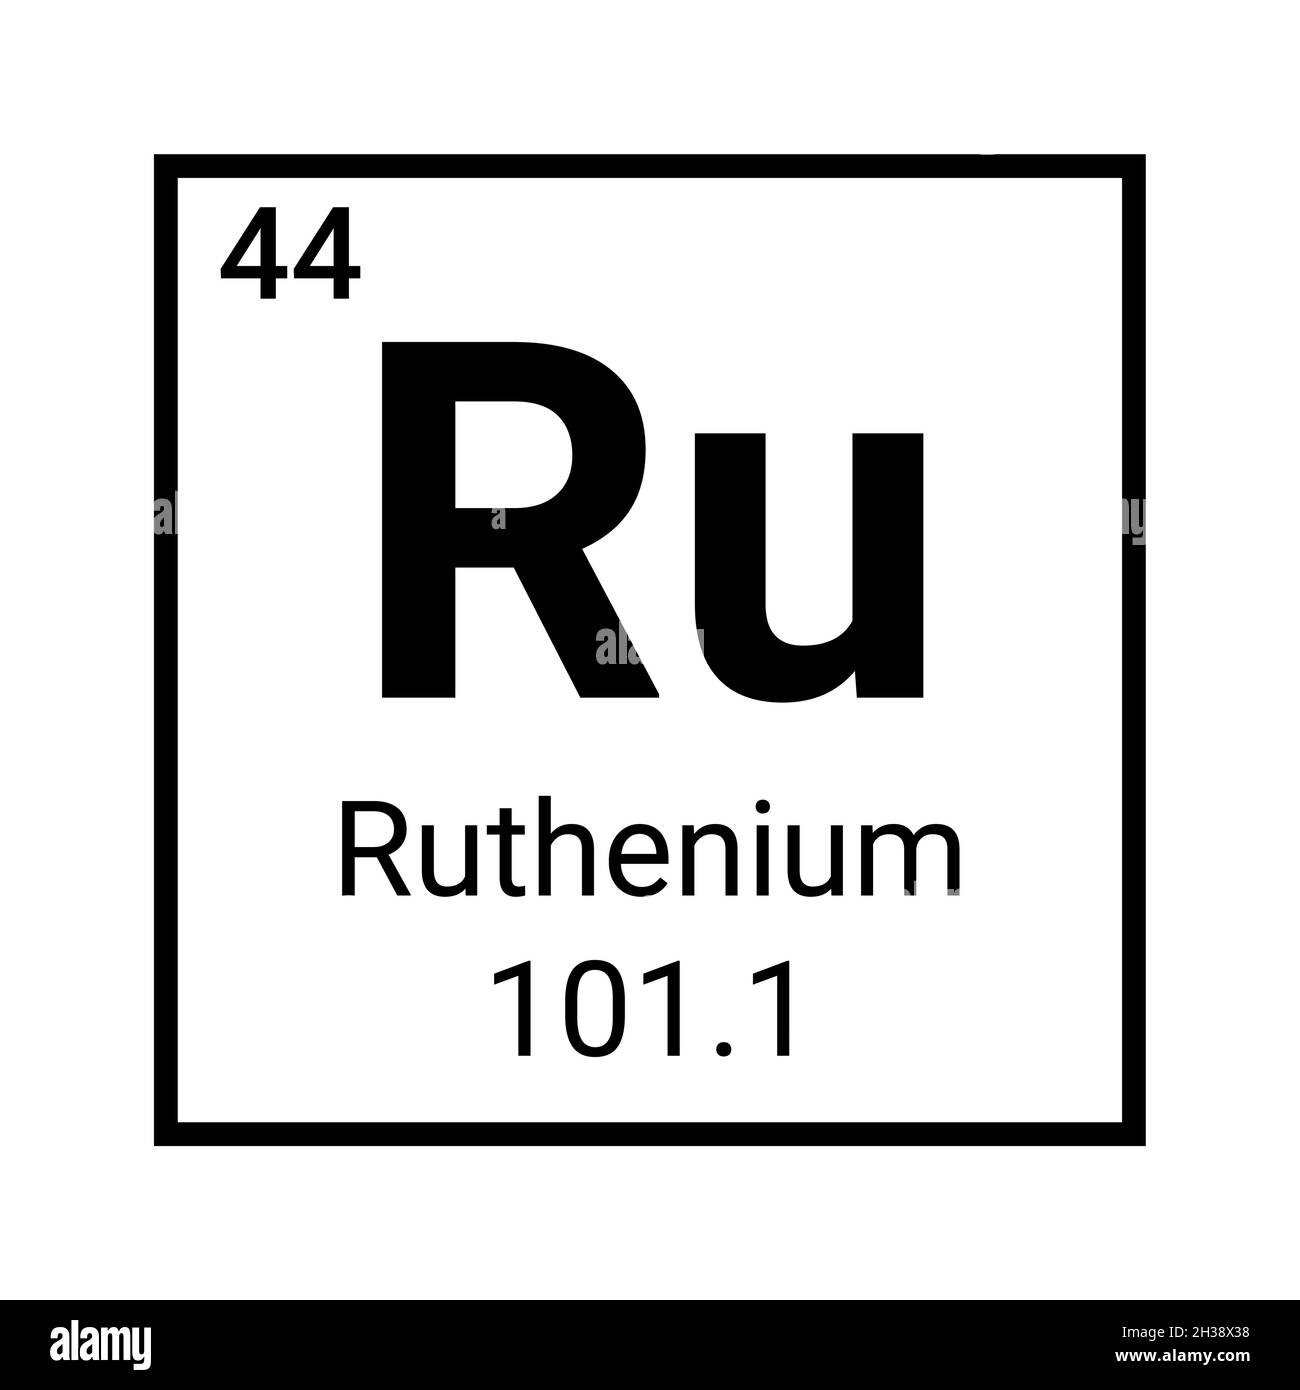 Ruthenium periodic table element icon symbol. Education science ruthenium atom symbol Stock Vector